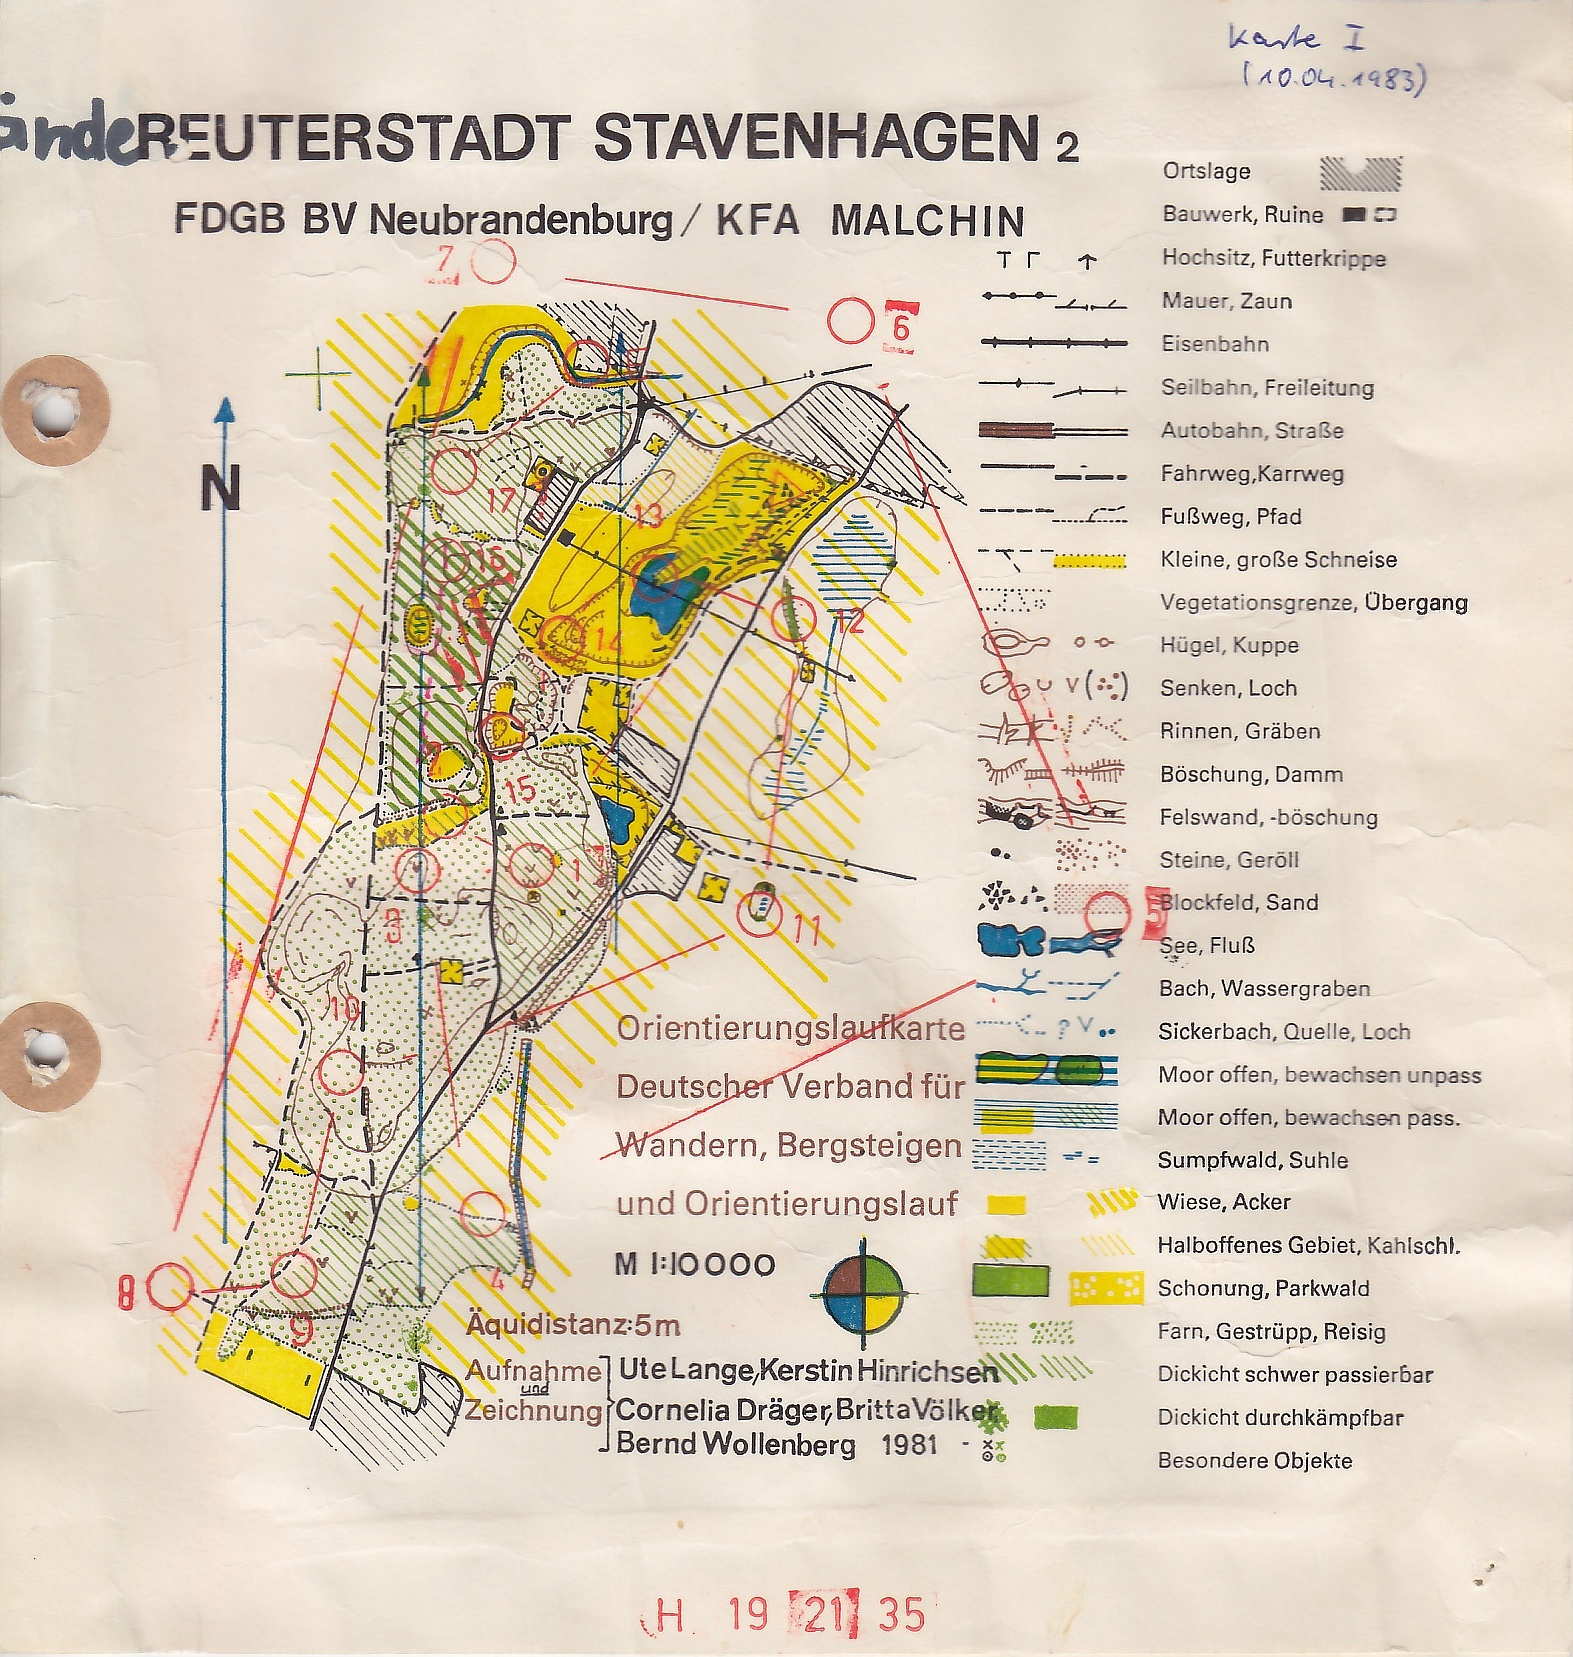 Stavenhagen (10-04-1983)